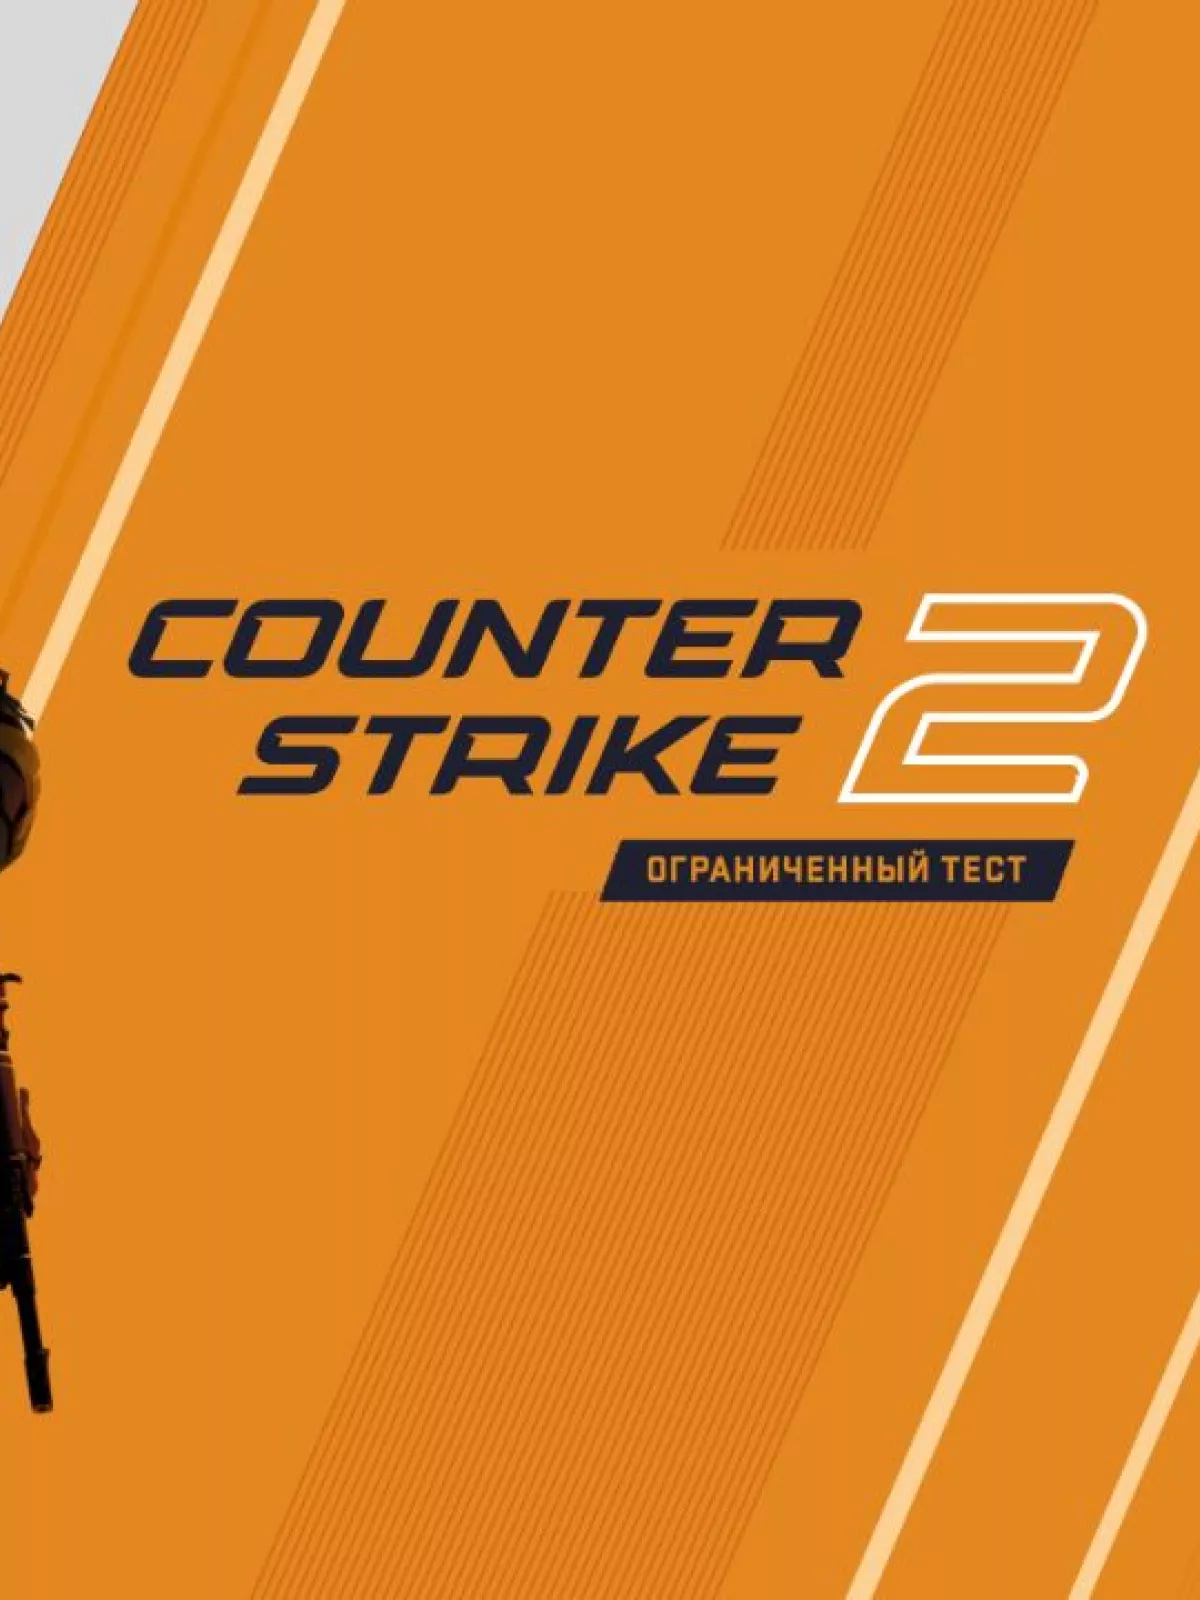 Компьютер для Counter Strike 2: системные требования